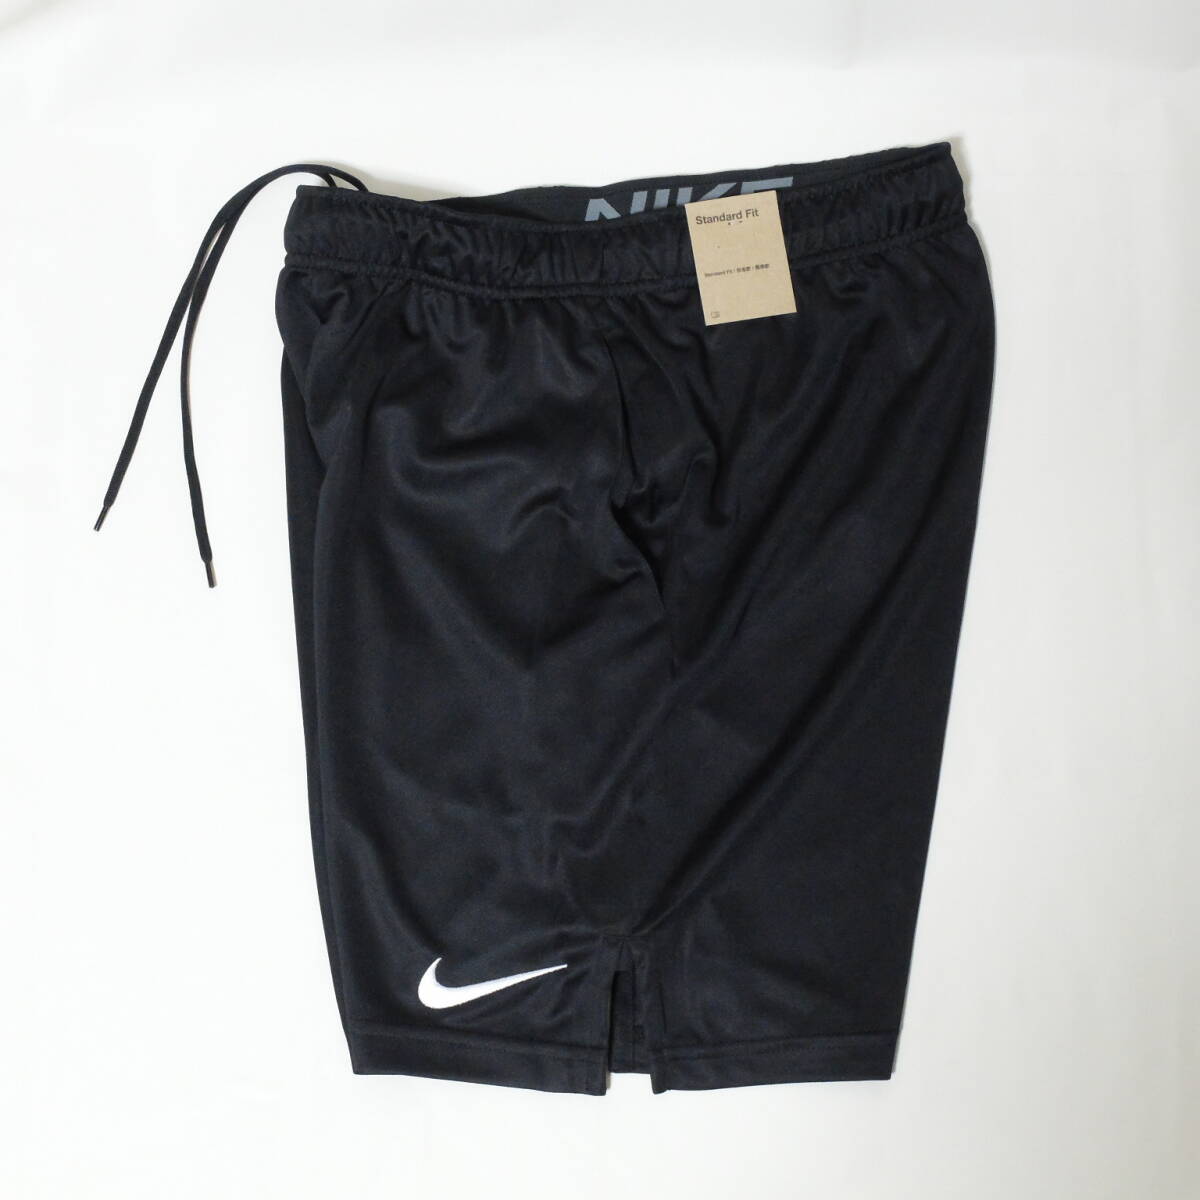 [新品 送料込] メンズS ナイキ Dri-FIT メンズ ニット トレーニングショートパンツ Nike Dri-FIT Men's Knit Training Shorts DD1888 010_画像3